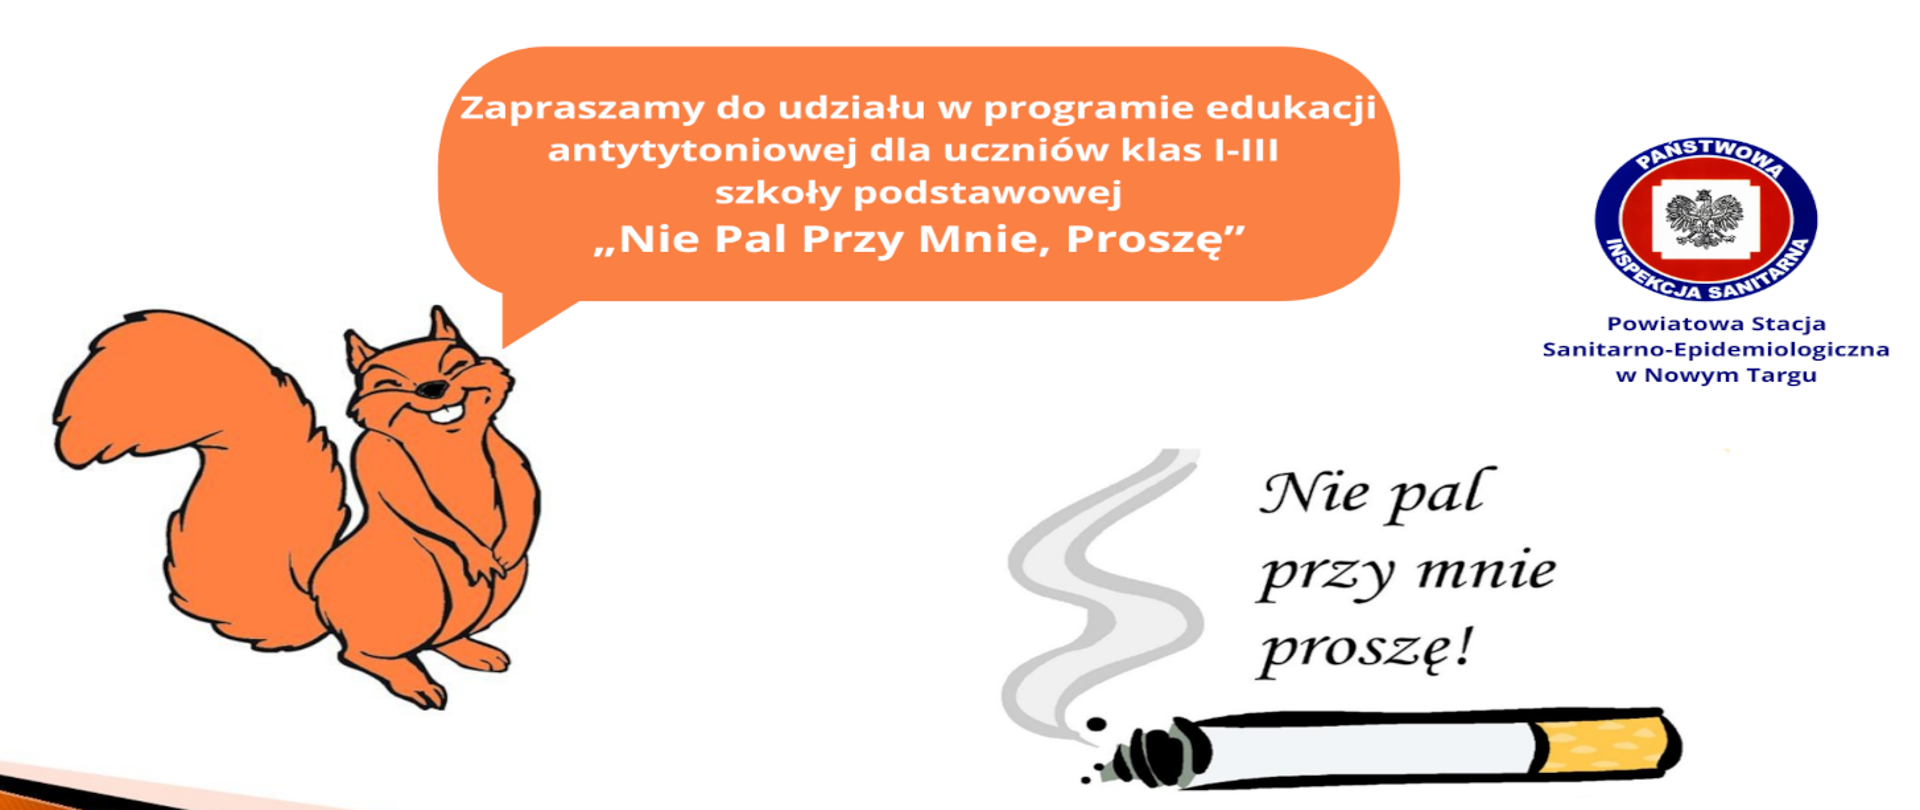 Plakat promujący do udziału w programie Nie pal przy mnie proszę z wiewiórką i papierosem